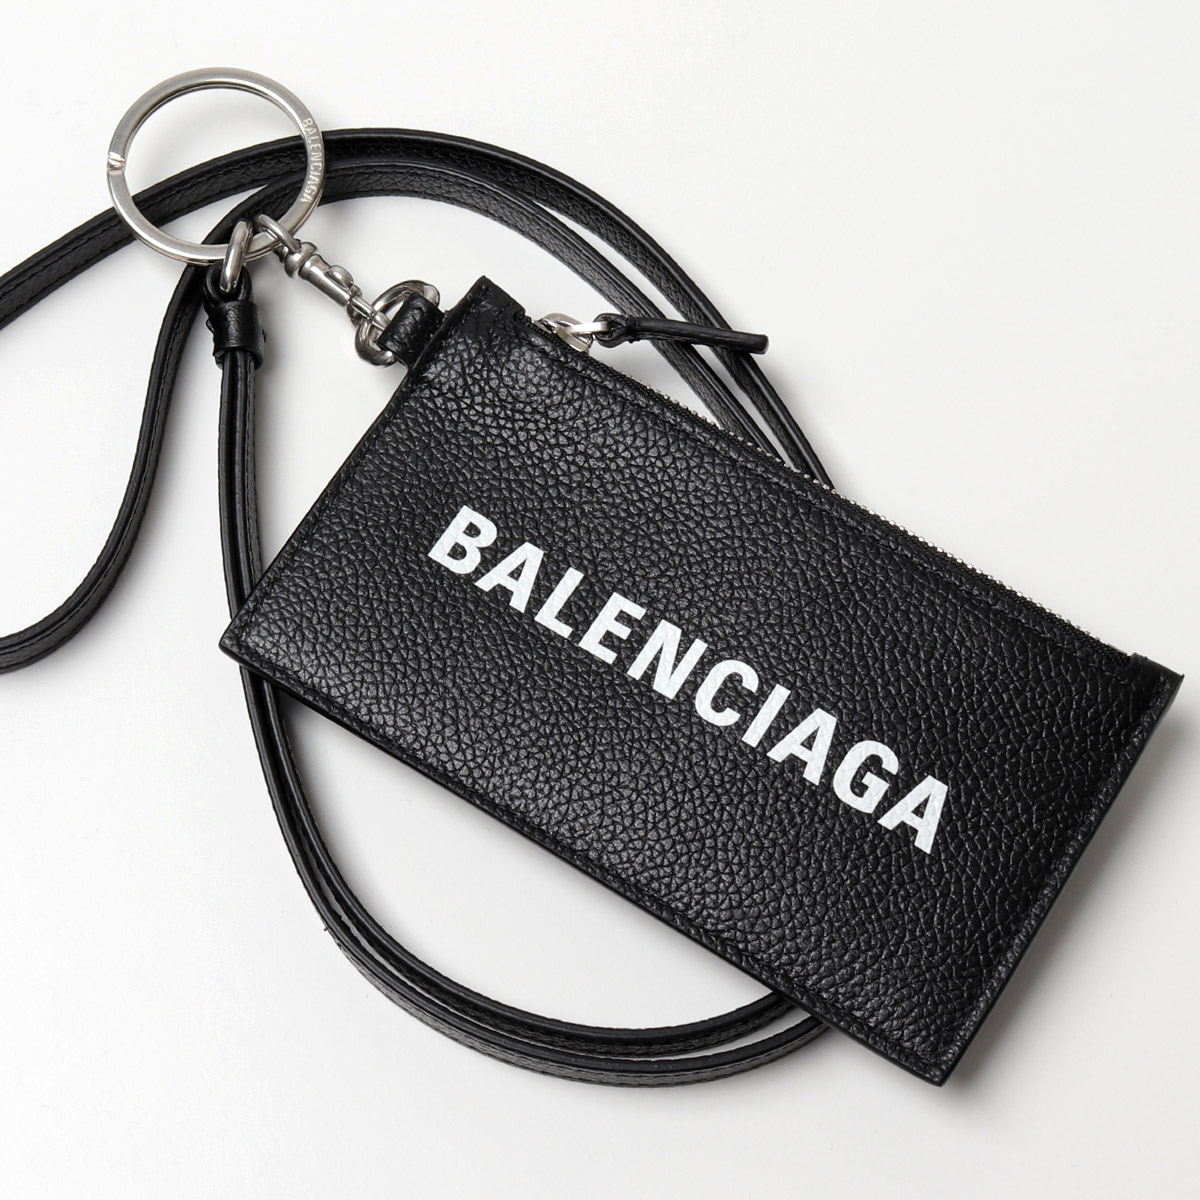 新作人気モデル BALENCIAGA バレンシアガ 594548 1IZI3 1IZ43 レザー コイン&カードケース ネックポーチ フラグメントケース 1090/BLACK/L-WHITE レディース